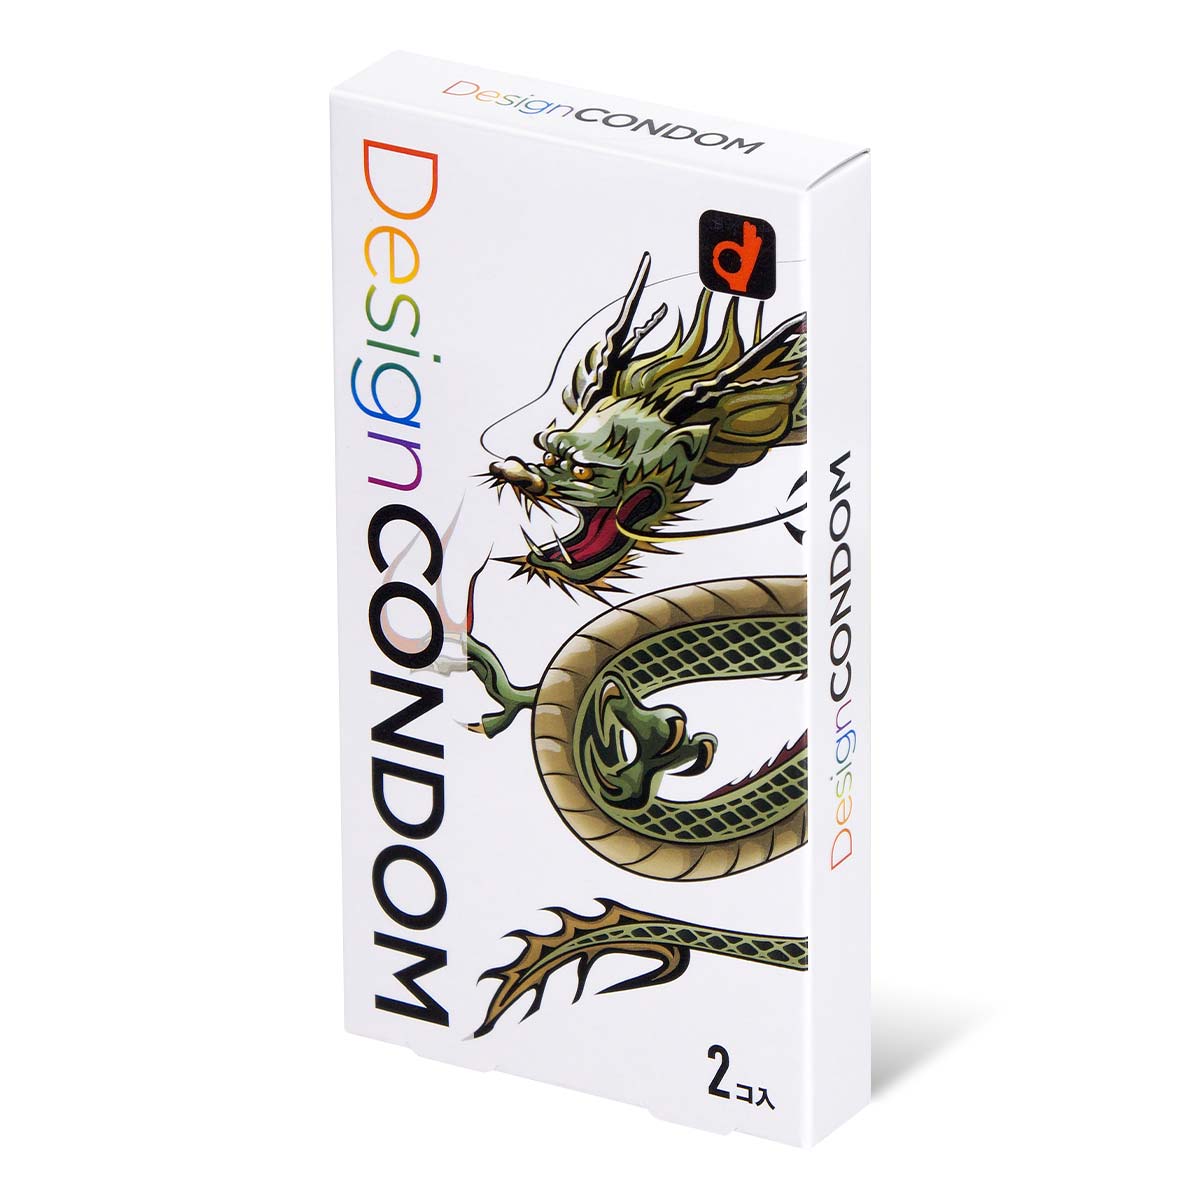 岡本 龍 Design Condom (日本版) 2 片 乳膠安全套-p_1